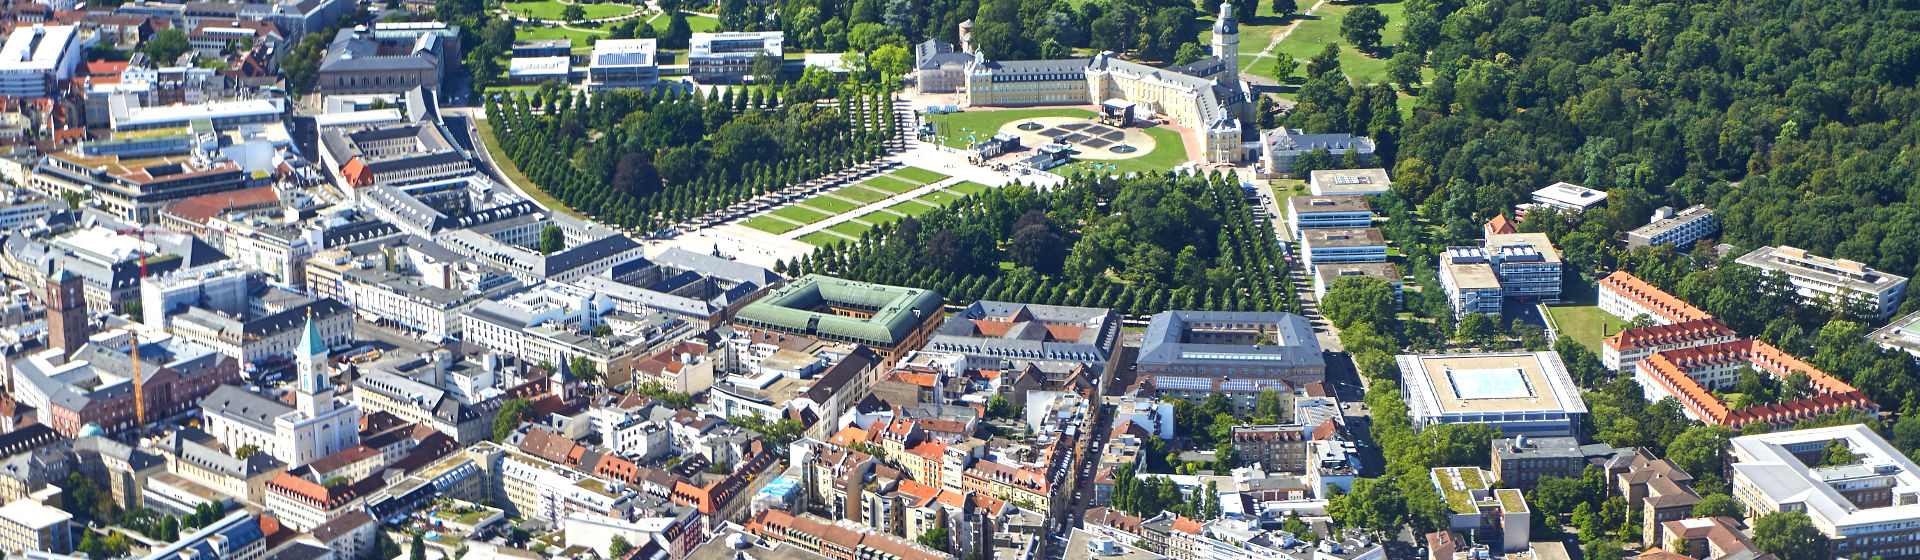 Photo de la ville de Karlsruhe